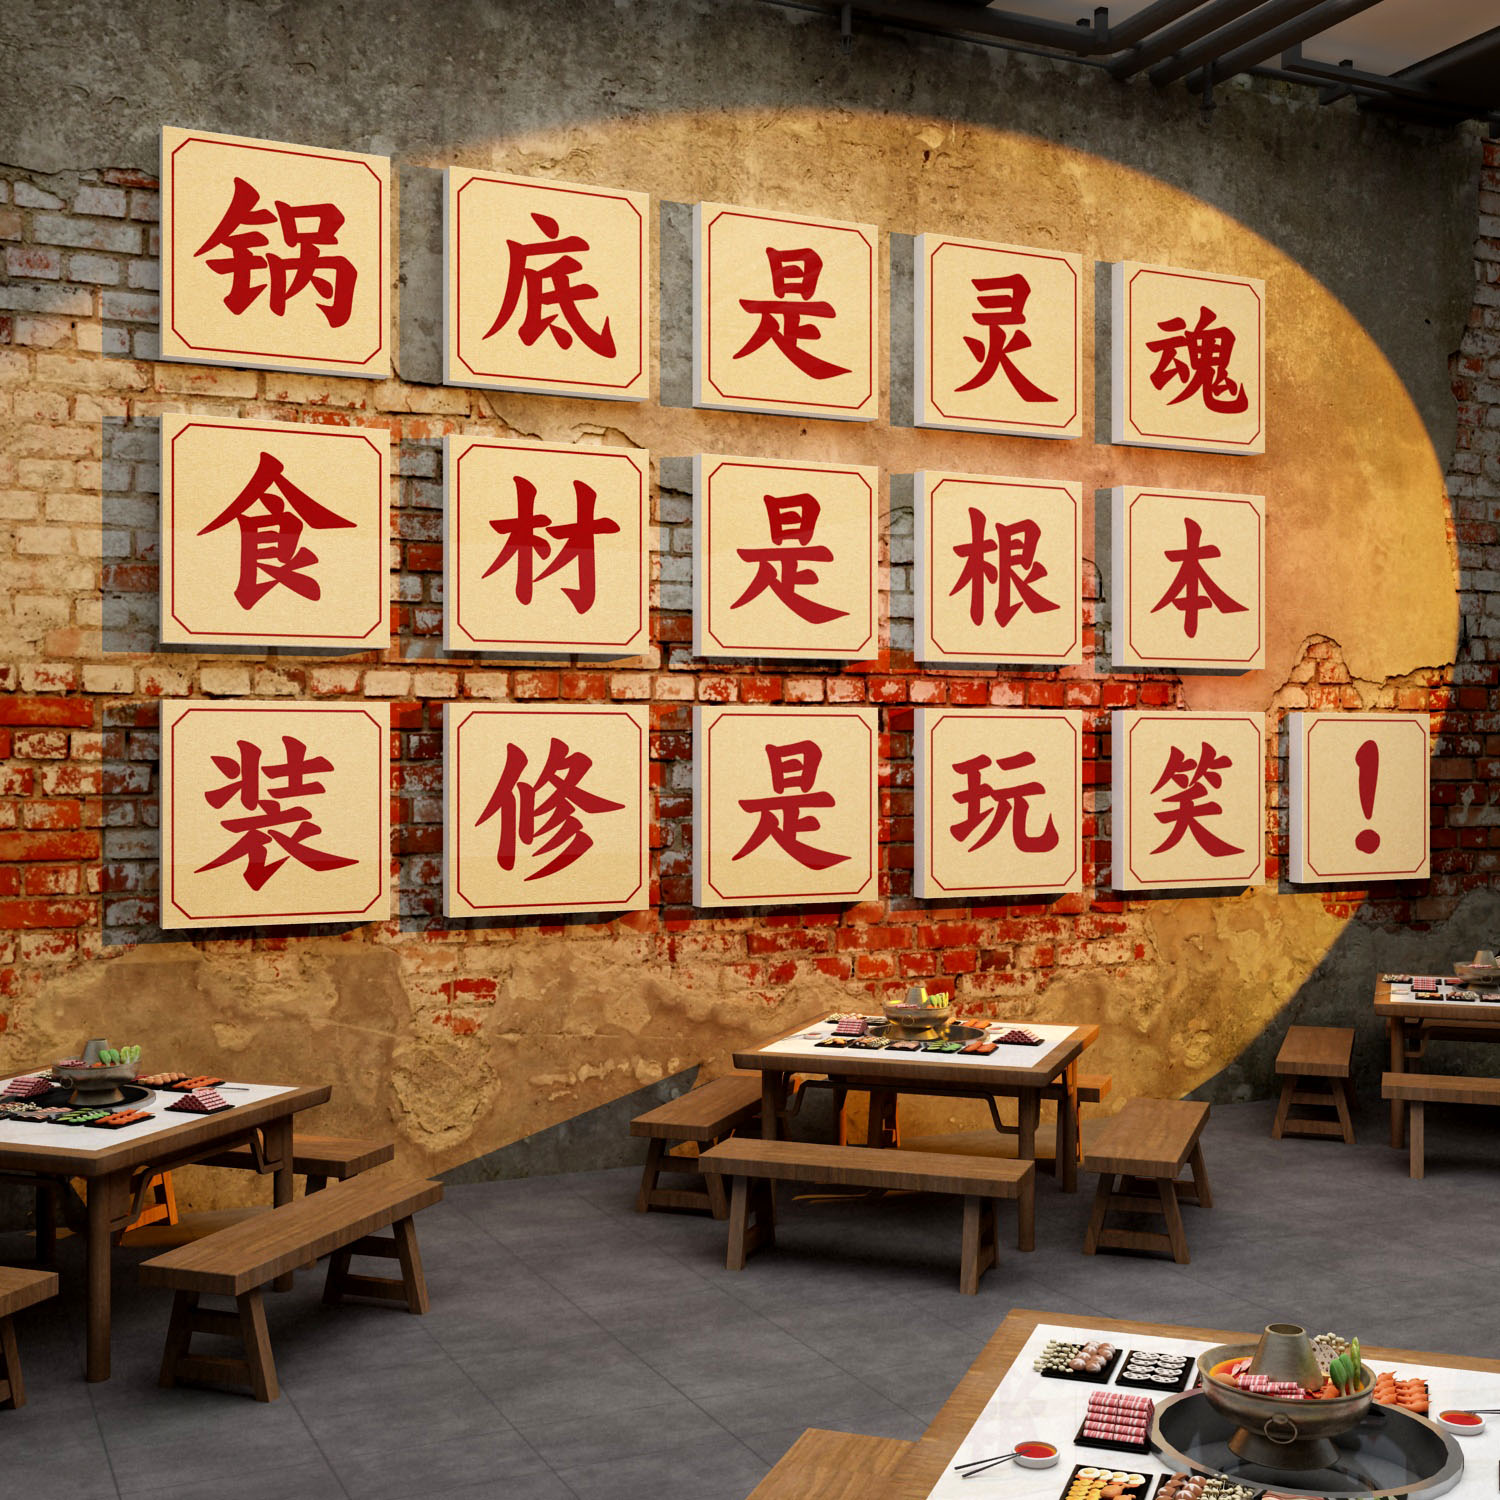 火锅店墙面装饰创意画文化网红旋转市井风格复古饭店餐饮壁纸贴画图片